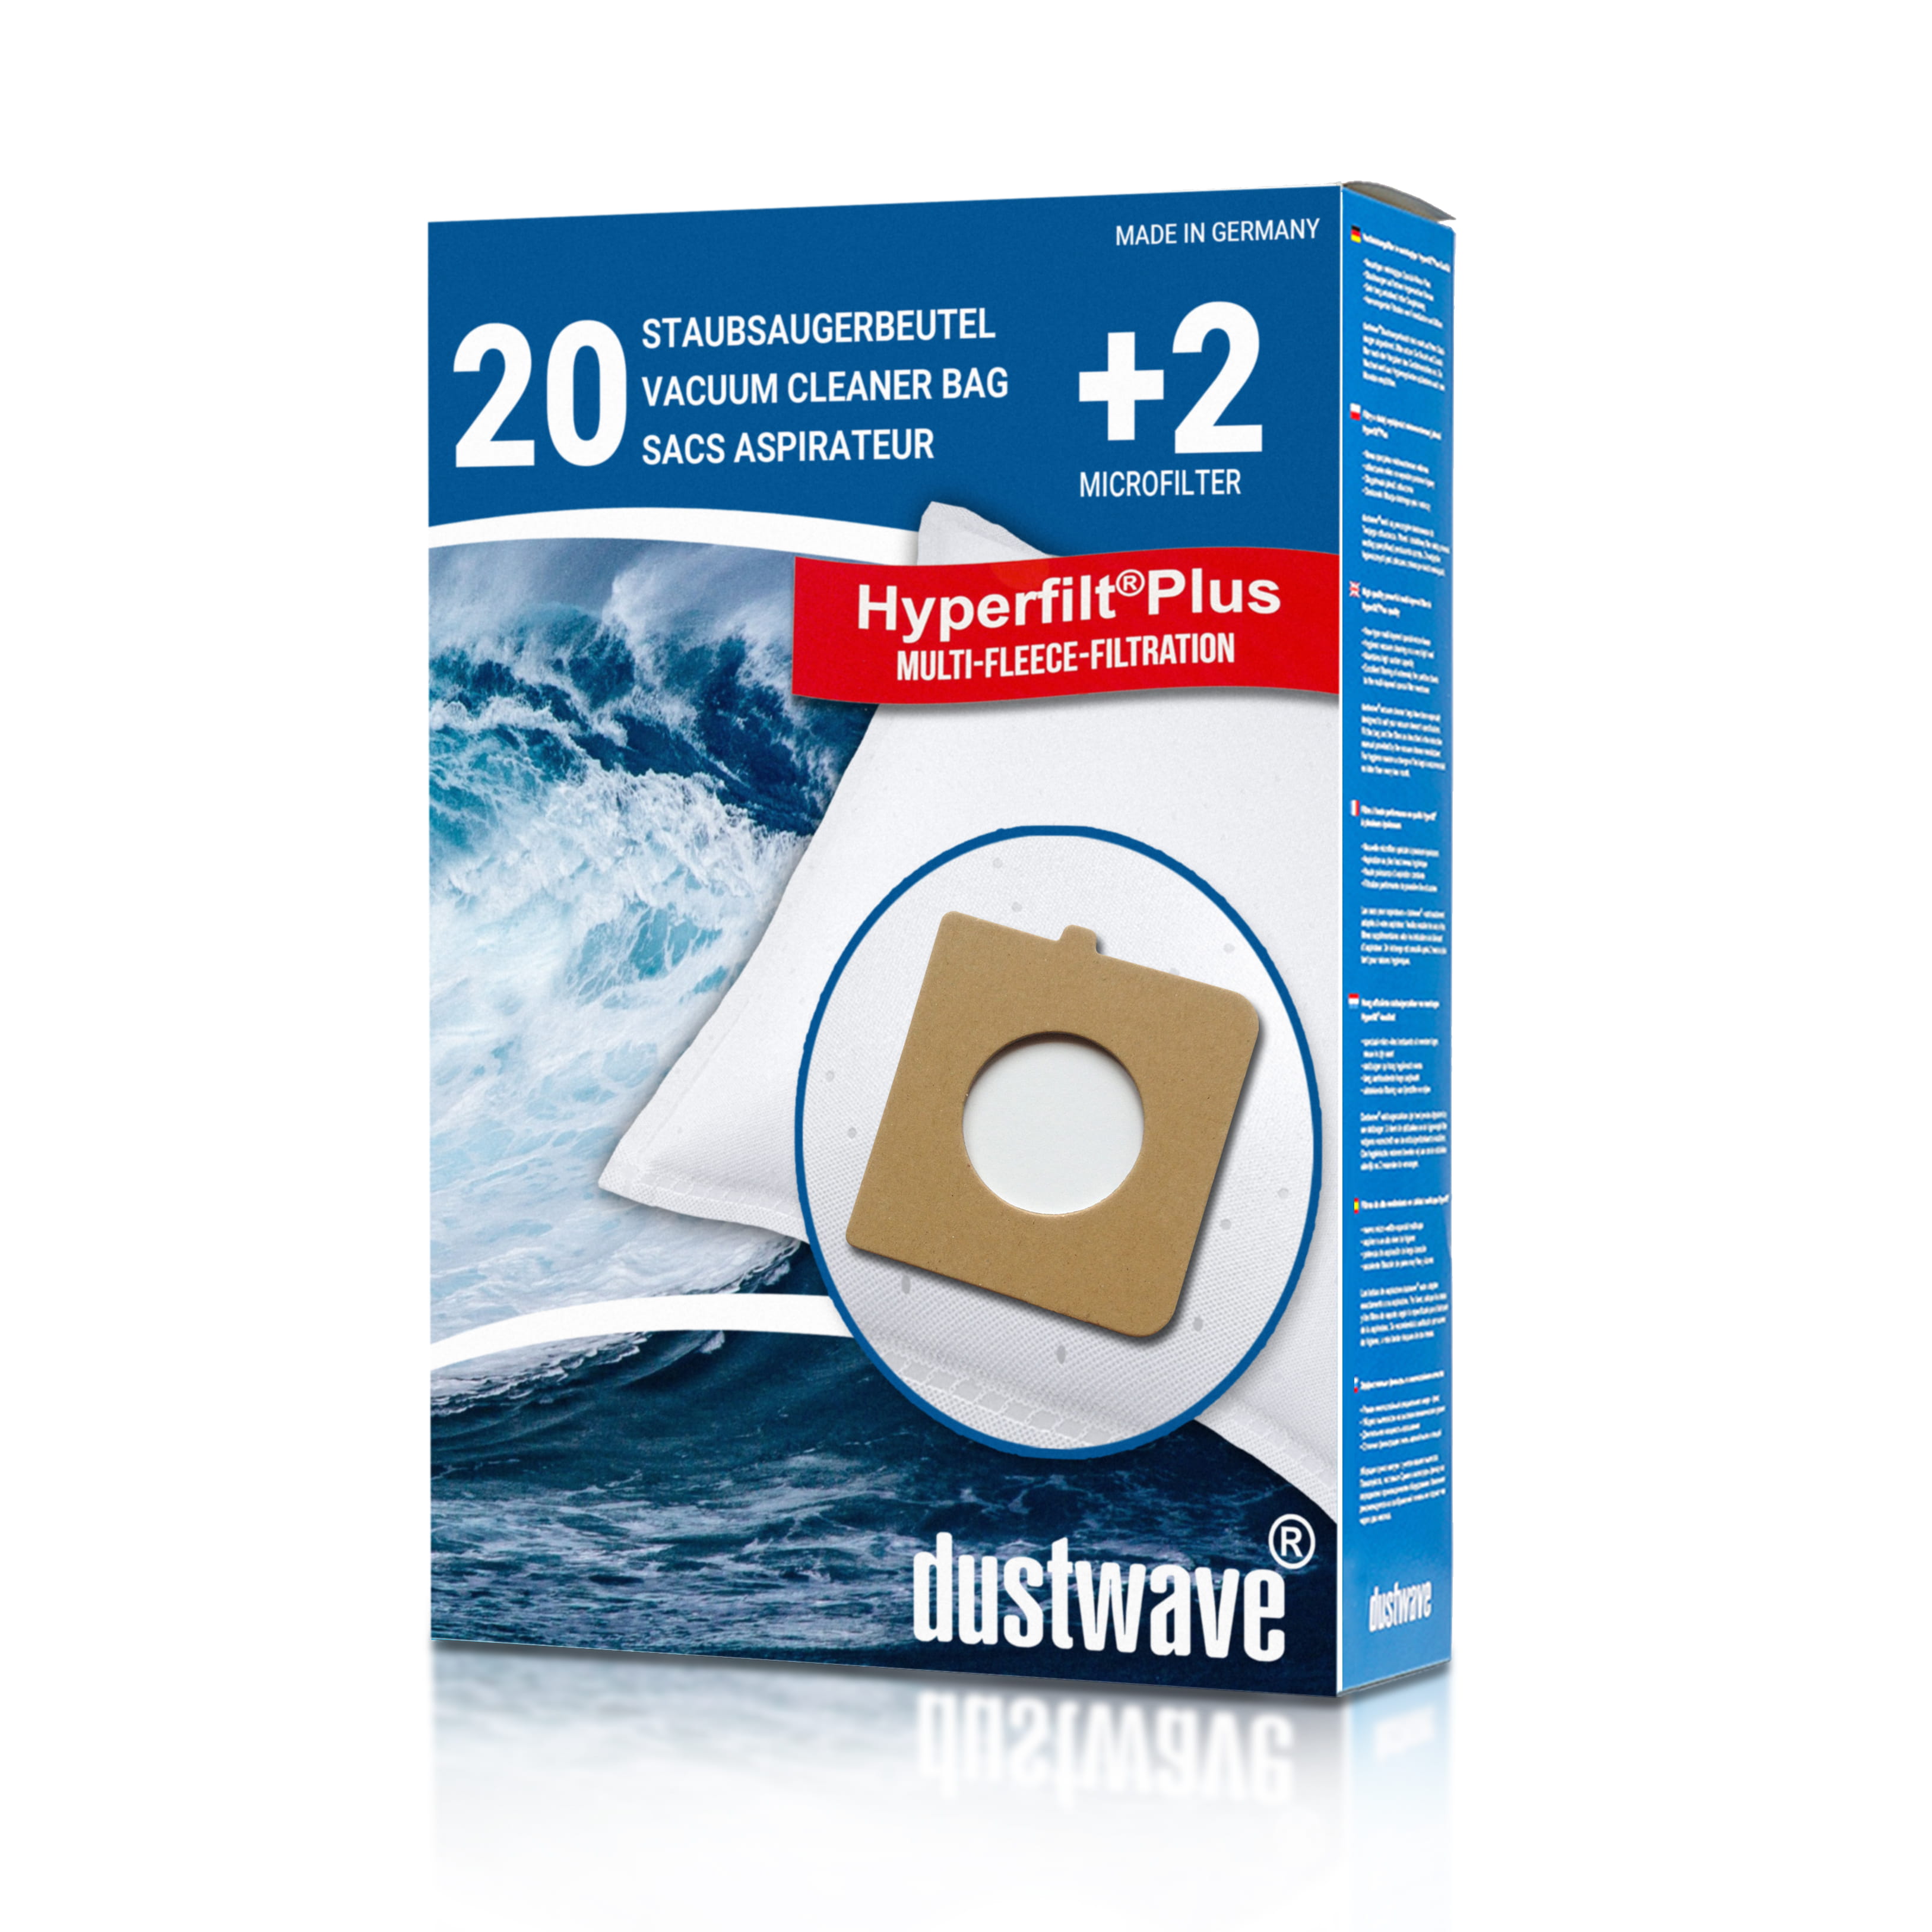 Dustwave® 20 Staubsaugerbeutel für Hoover TX52ALG 011 Telios Extra - hocheffizient, mehrlagiges Mikrovlies mit Hygieneverschluss - Made in Germany